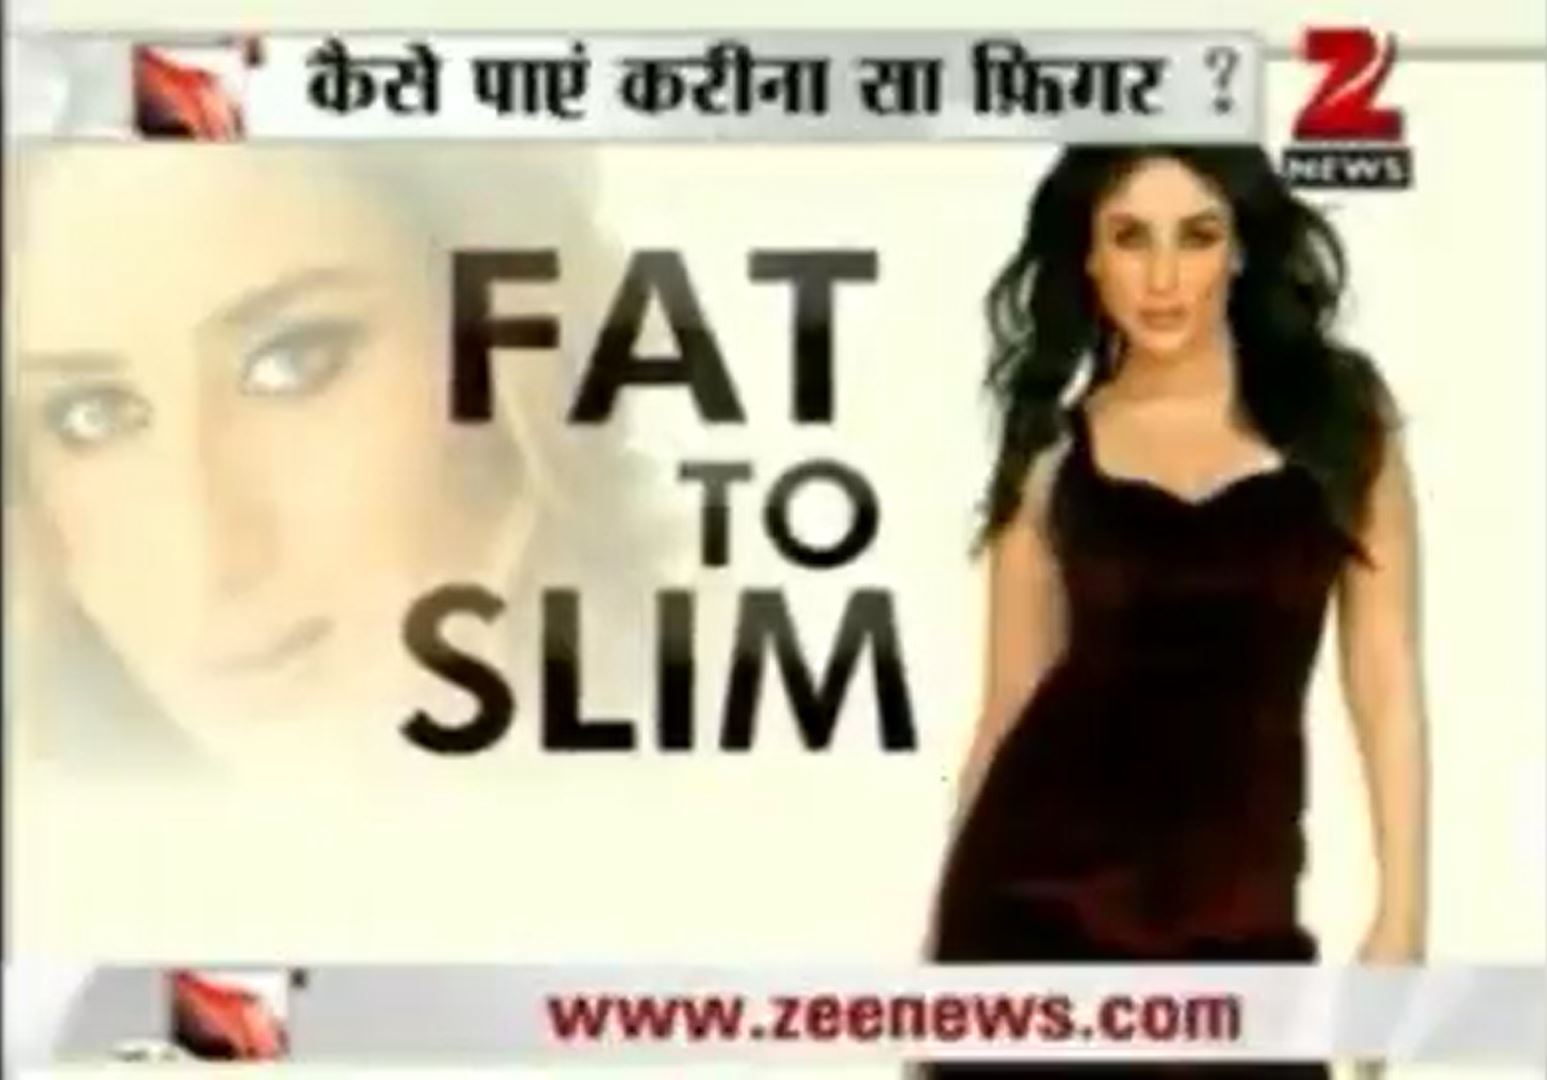 Zee News - Fat to slim